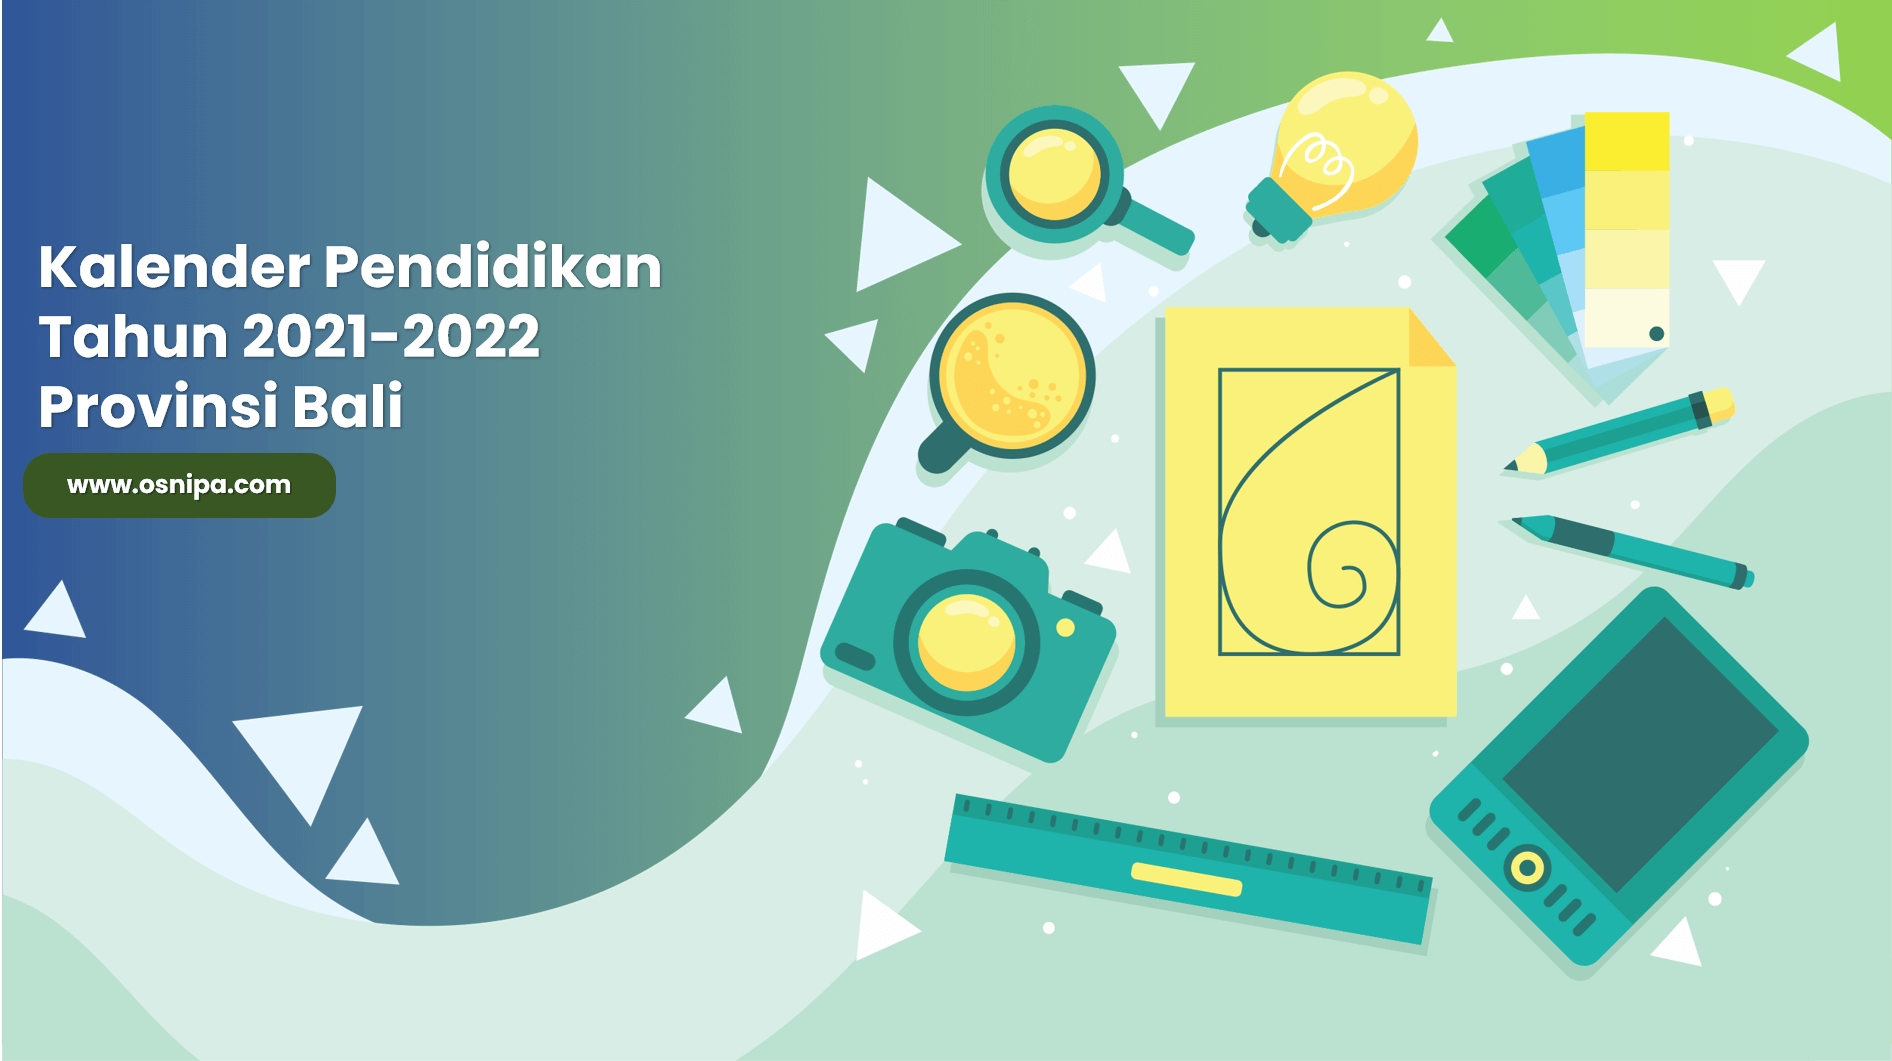 Kalender Pendidikan Tahun 2021-2022 Provinsi Bali